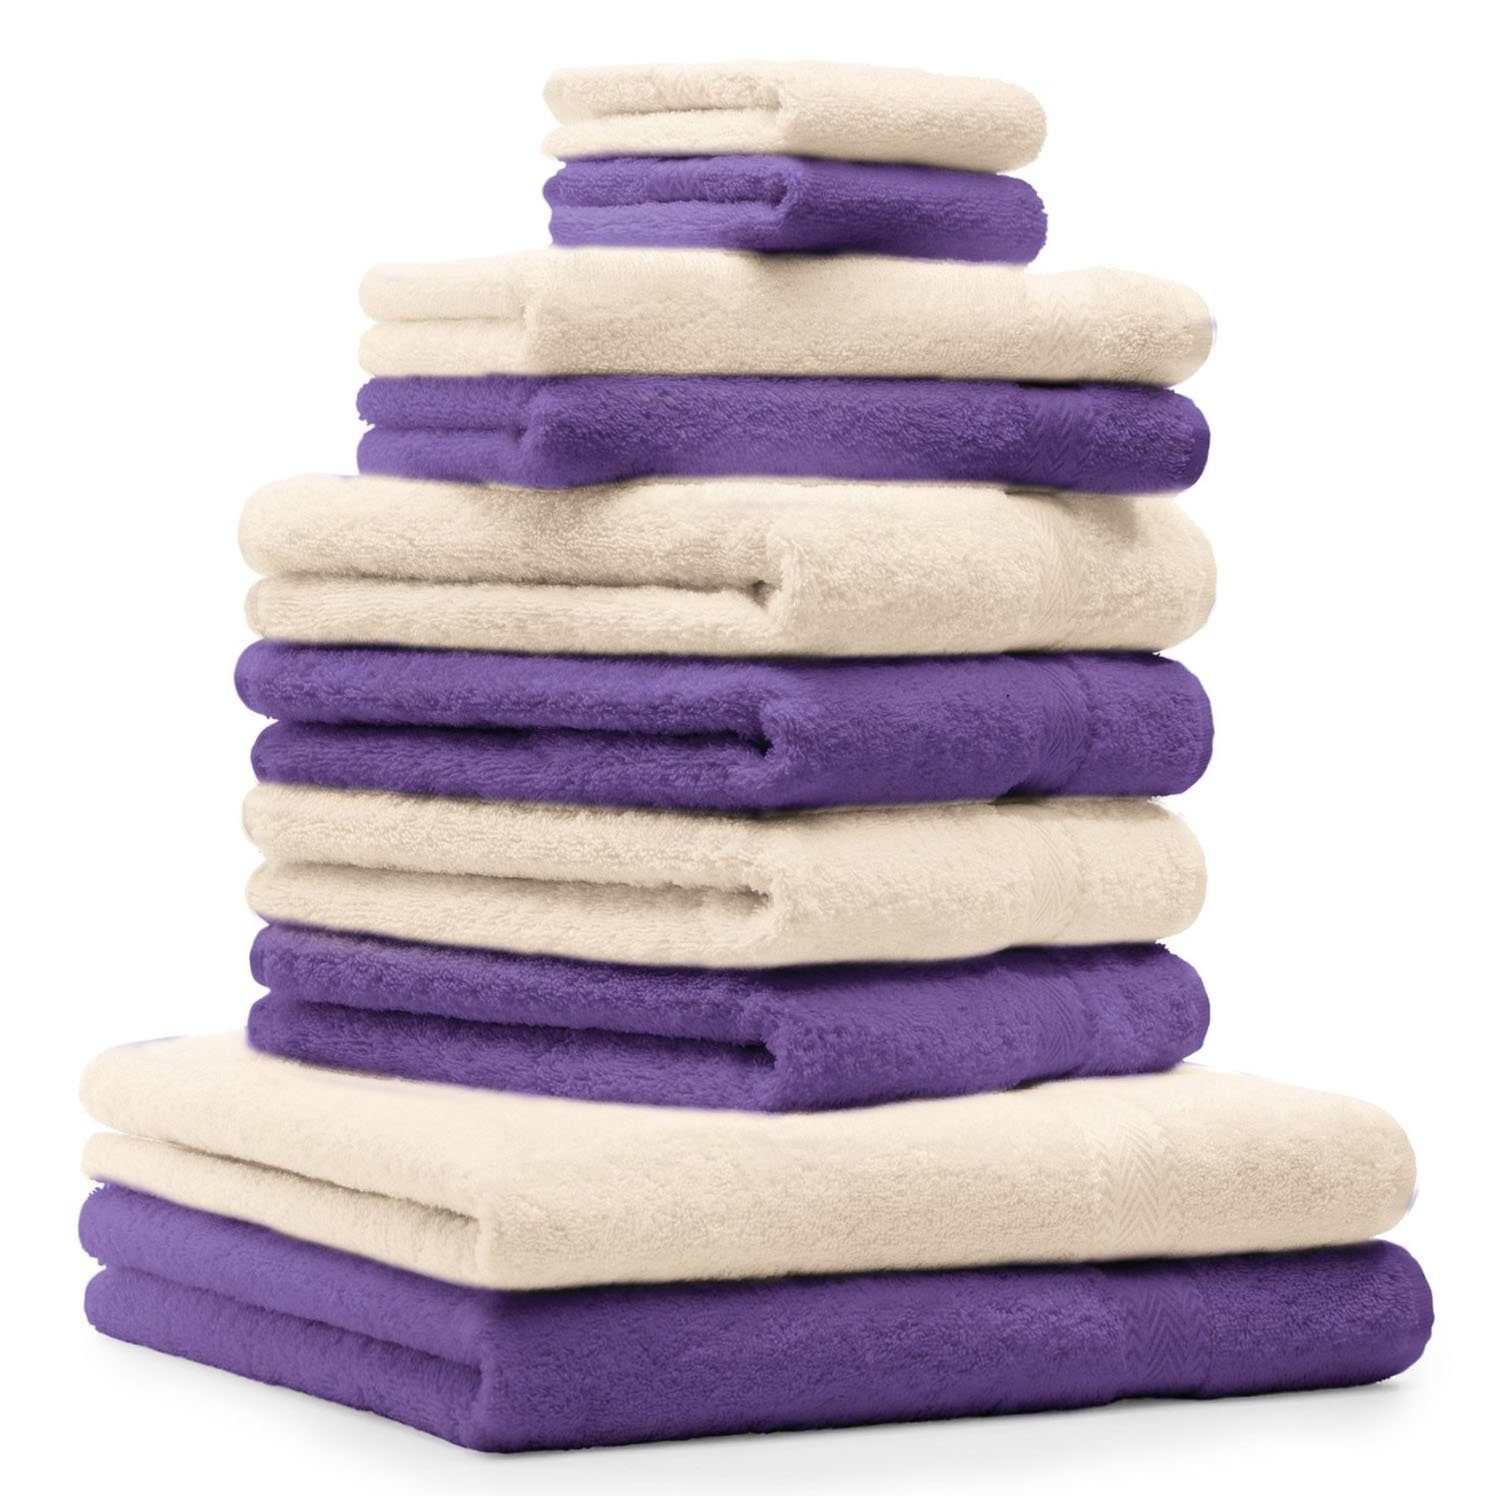 Betz Handtuch Set 10-TLG. Handtuch-Set Classic Farbe lila und beige, 100% Baumwolle